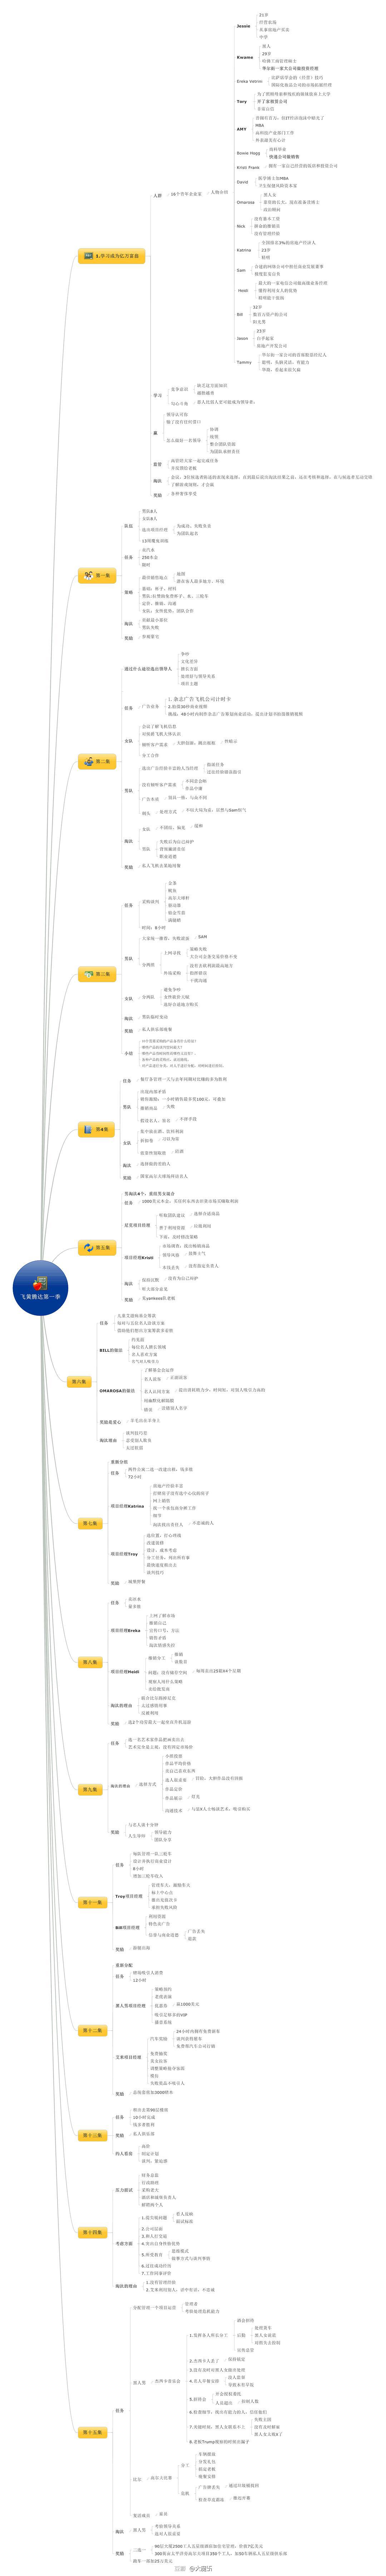 通过无限的树形结构来组织内容的免费思维导图工具(图1)